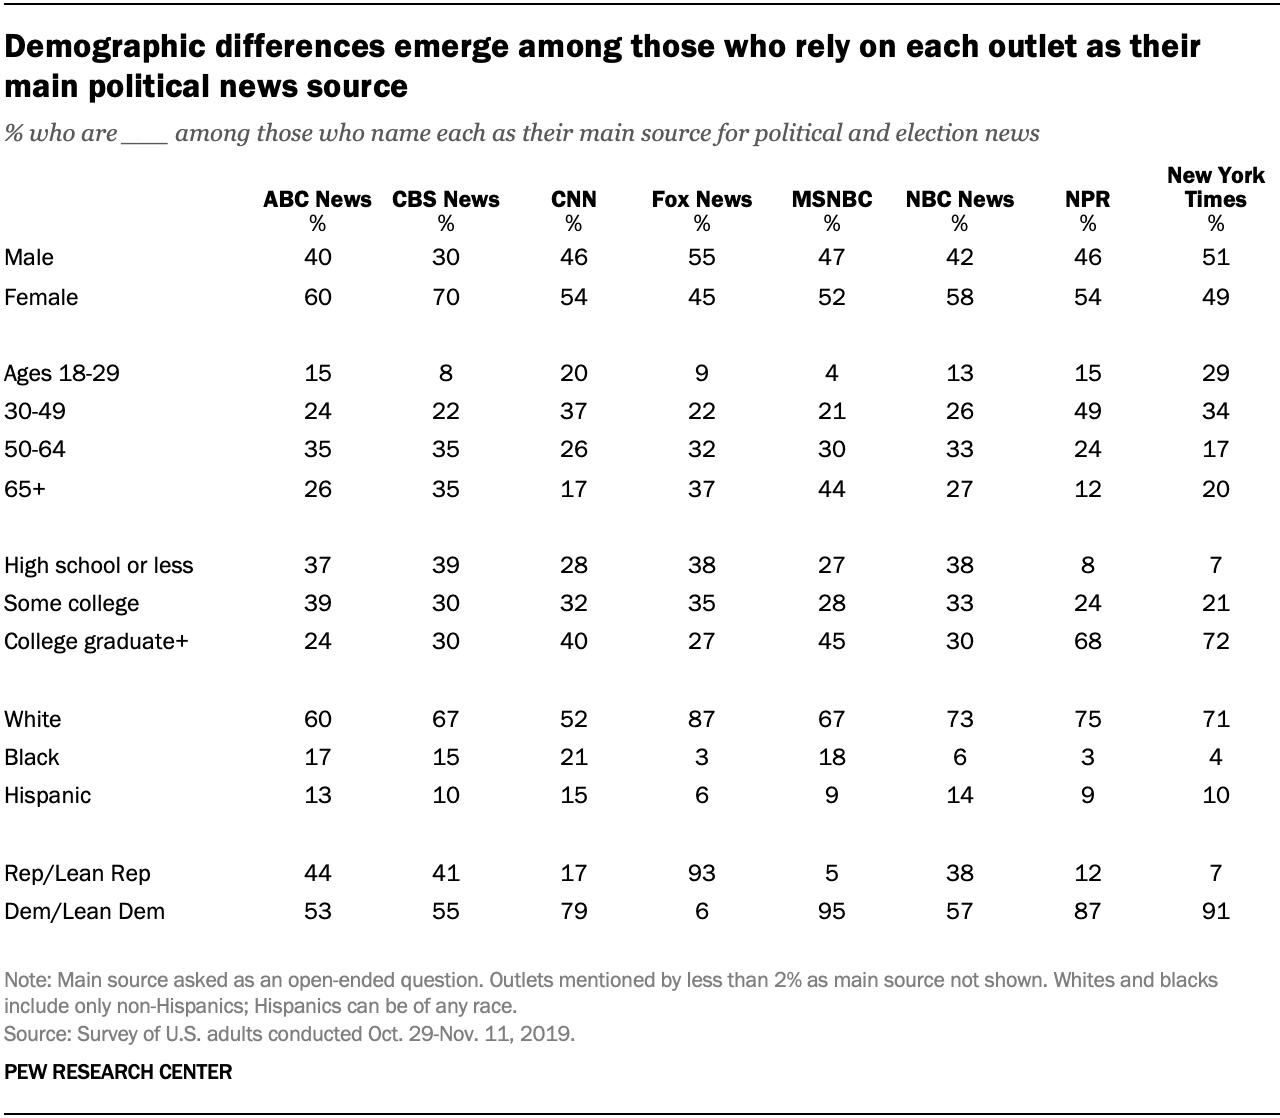 Las diferencias demográficas surgen entre aquellos que dependen de cada medio como su principal fuente de noticias políticas